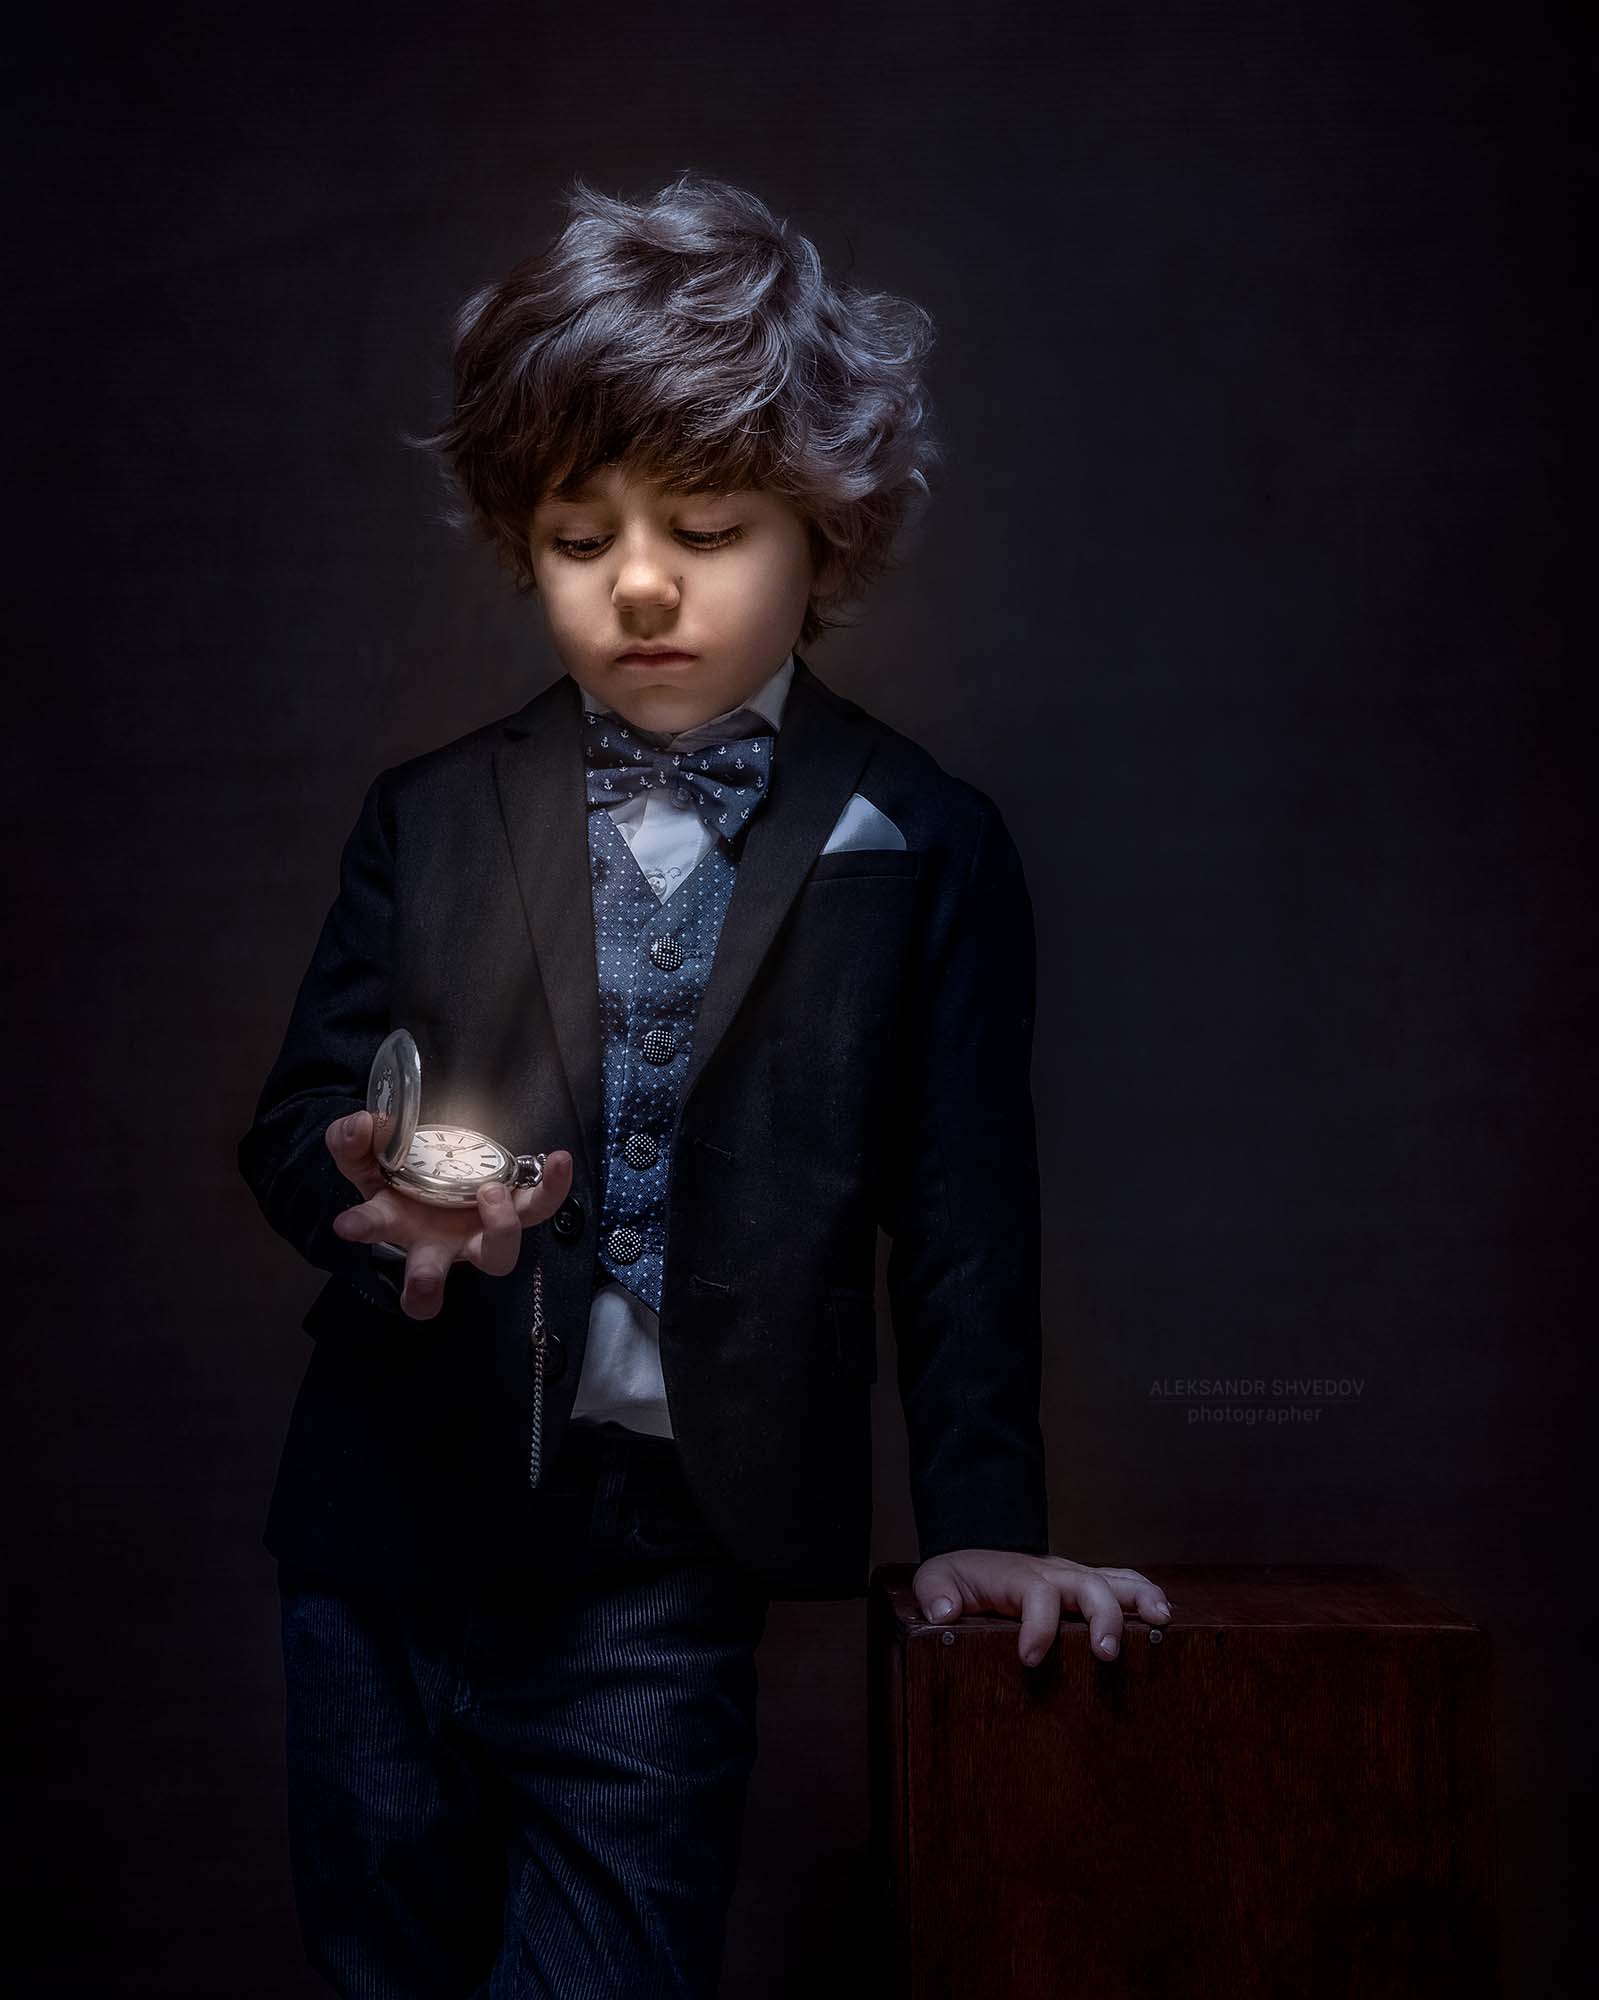 детский портрет, файнарт портрет, фотограф питер, портрет мальчика, детское фото, фото ребенка, ретро стиль, винтажный портрет, Aleksandr Shvedov